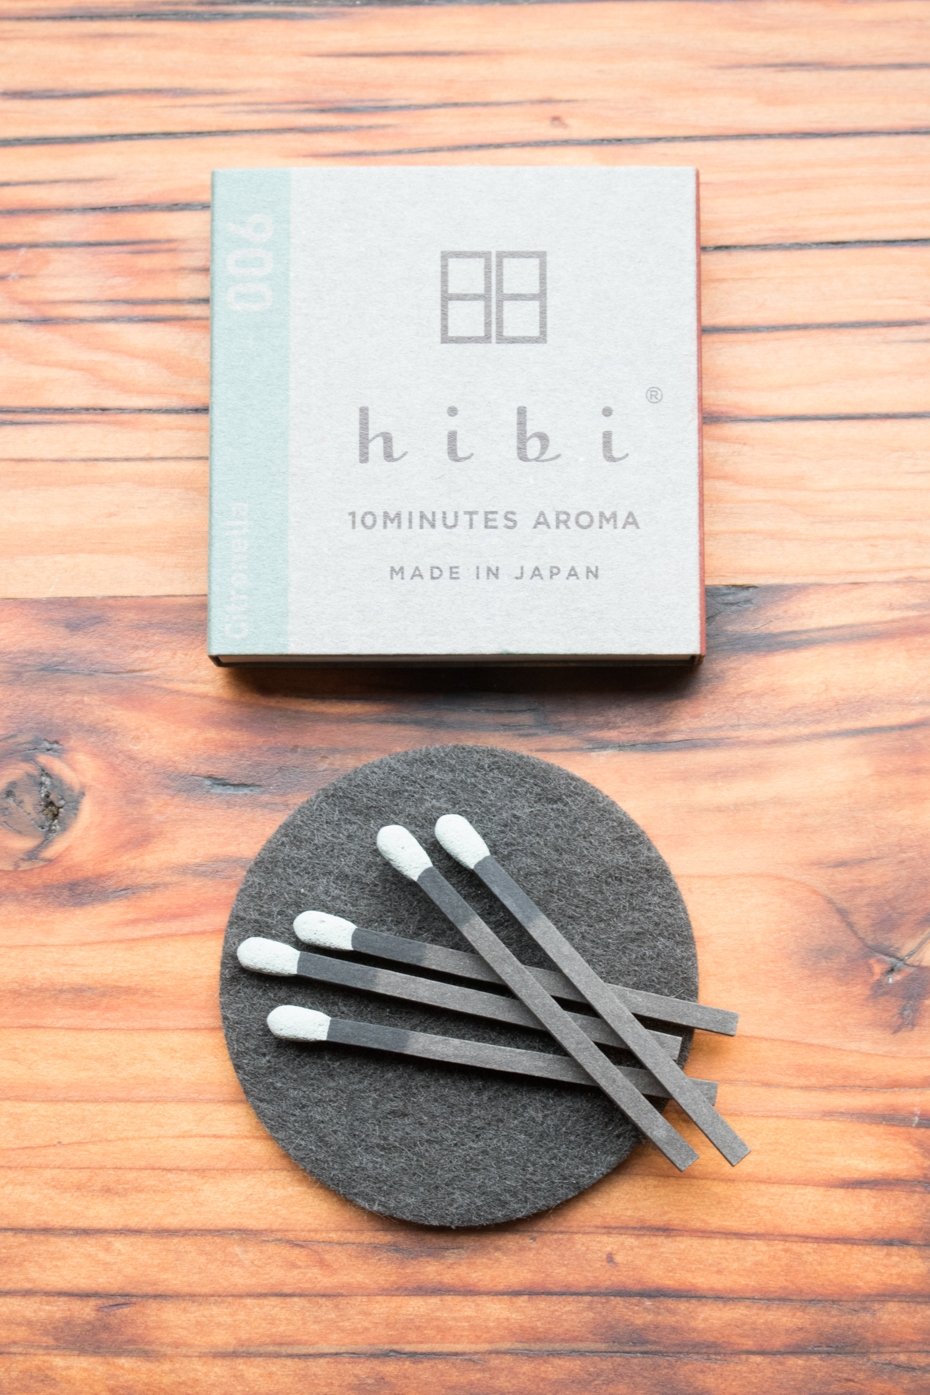 HiBi Hibi Citronella Incense Sticks